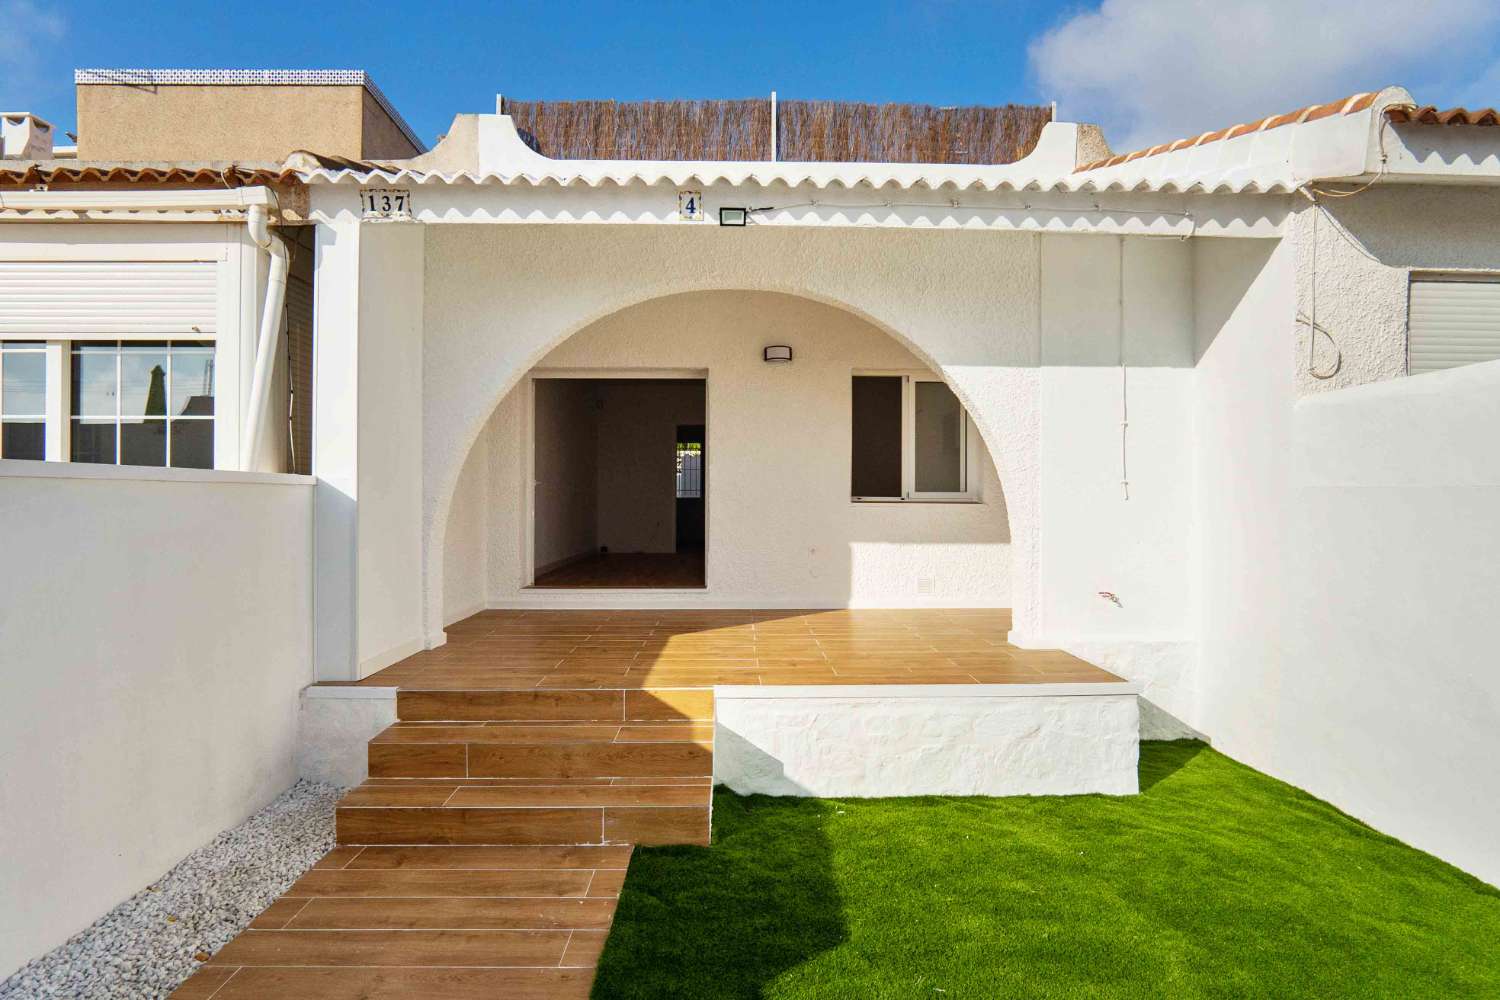 2 bedroom bungalow with garden in San Miguel de Salinas (Costa Blanca)